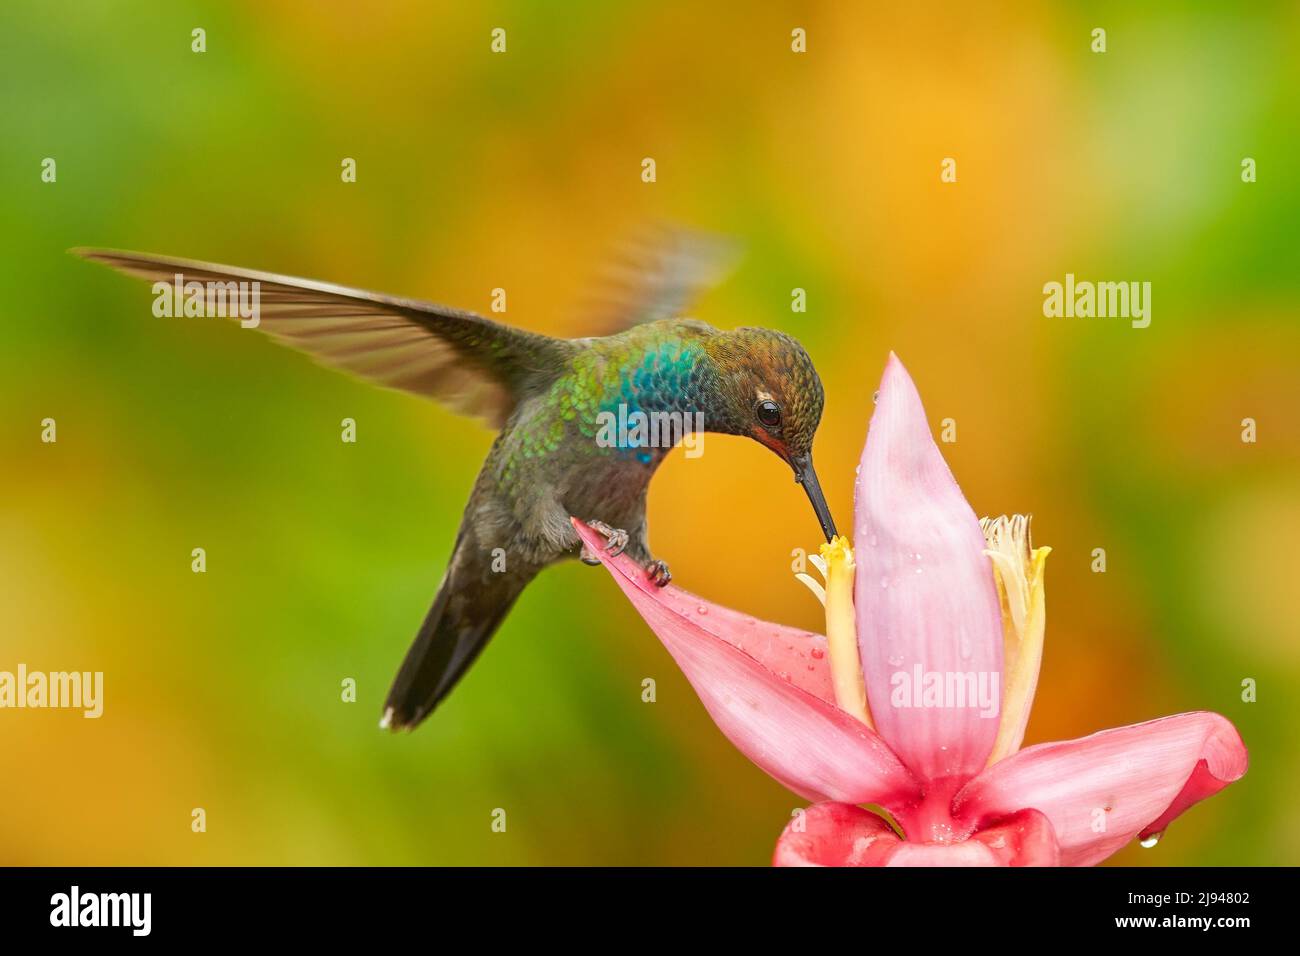 Tropische Tierwelt. Kolibri mit Blume. Rufous-gapped Hillstar , Urochroa bougueri, auf Ping Blume, grün und gelb Hintergrund, Vogel saugen Nektar Stockfoto